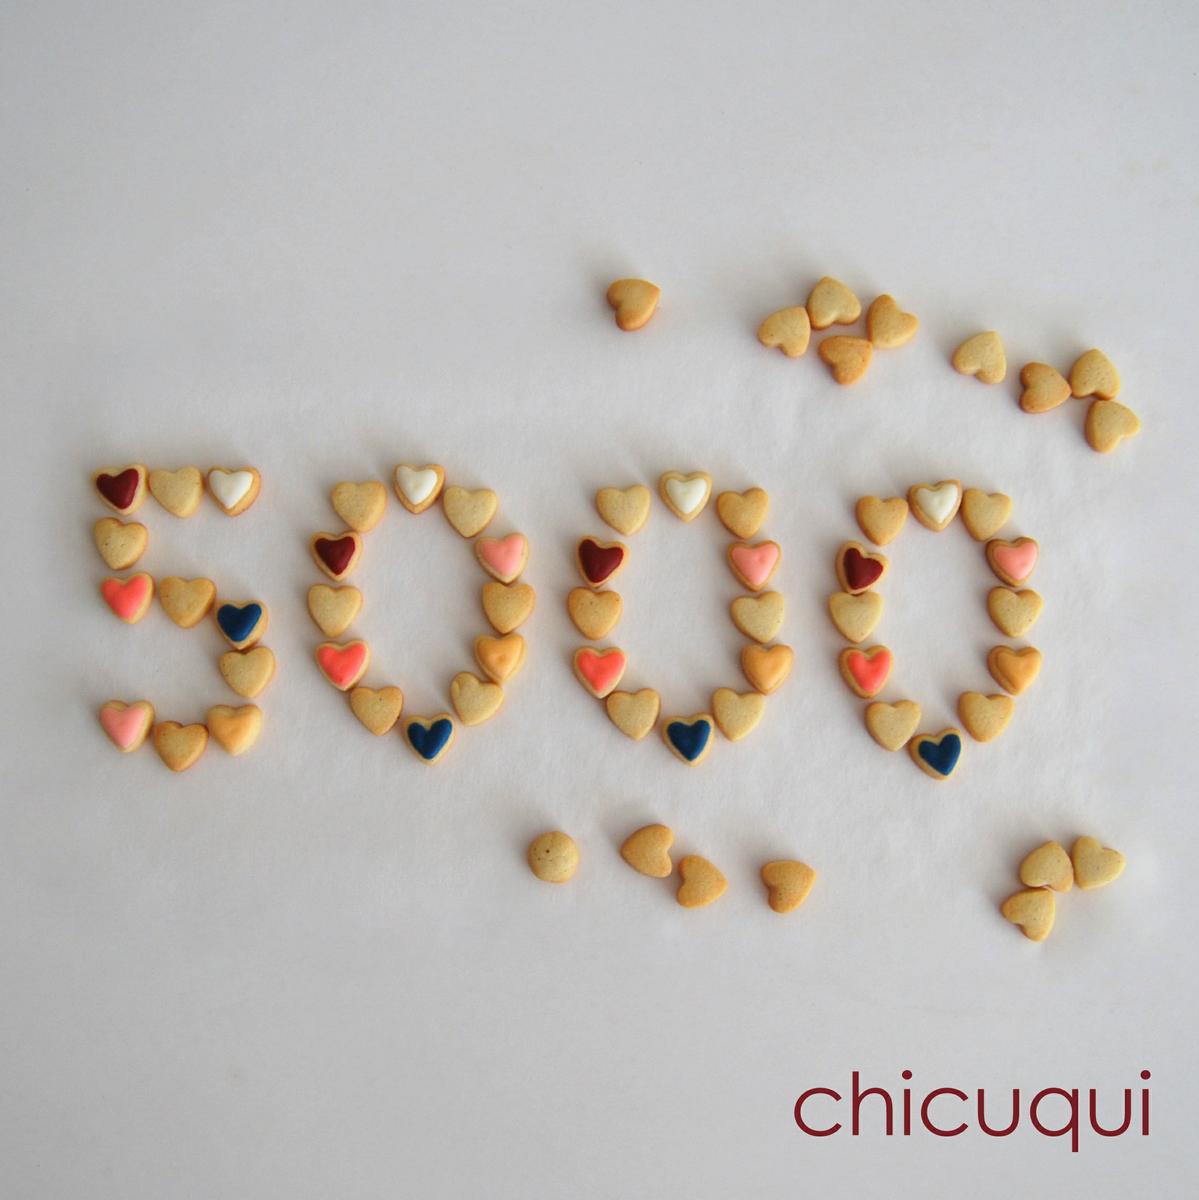 corazones galletas decoradas 5000 likes chicuqui.com